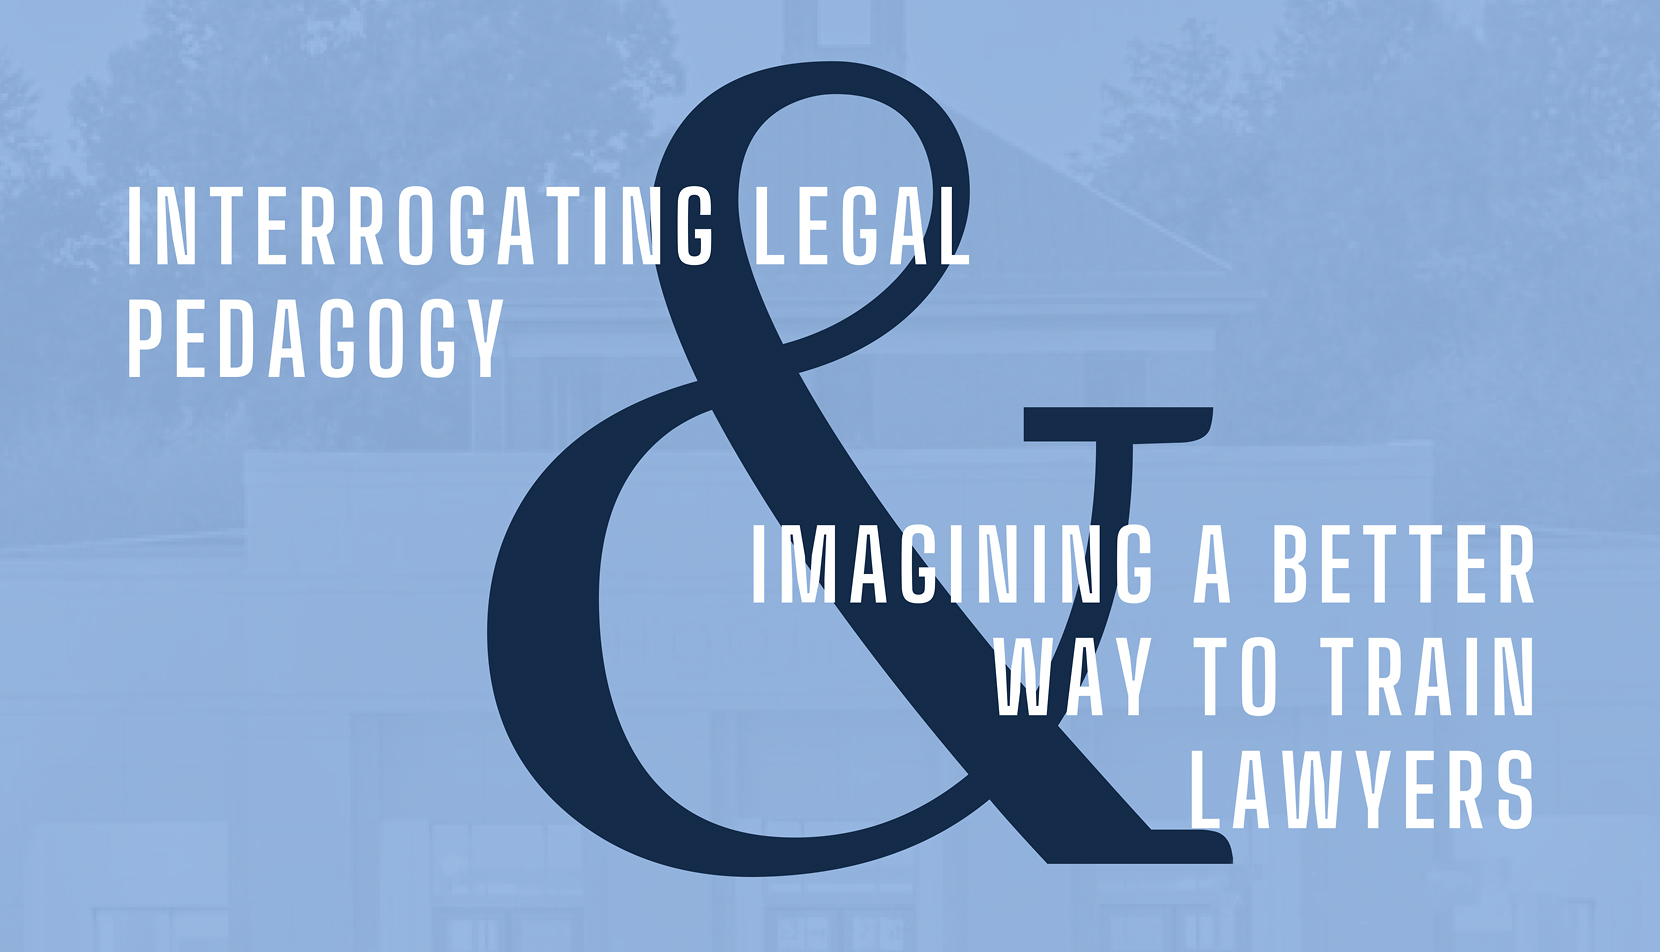 Symposium To Examine Legal Pedagogy